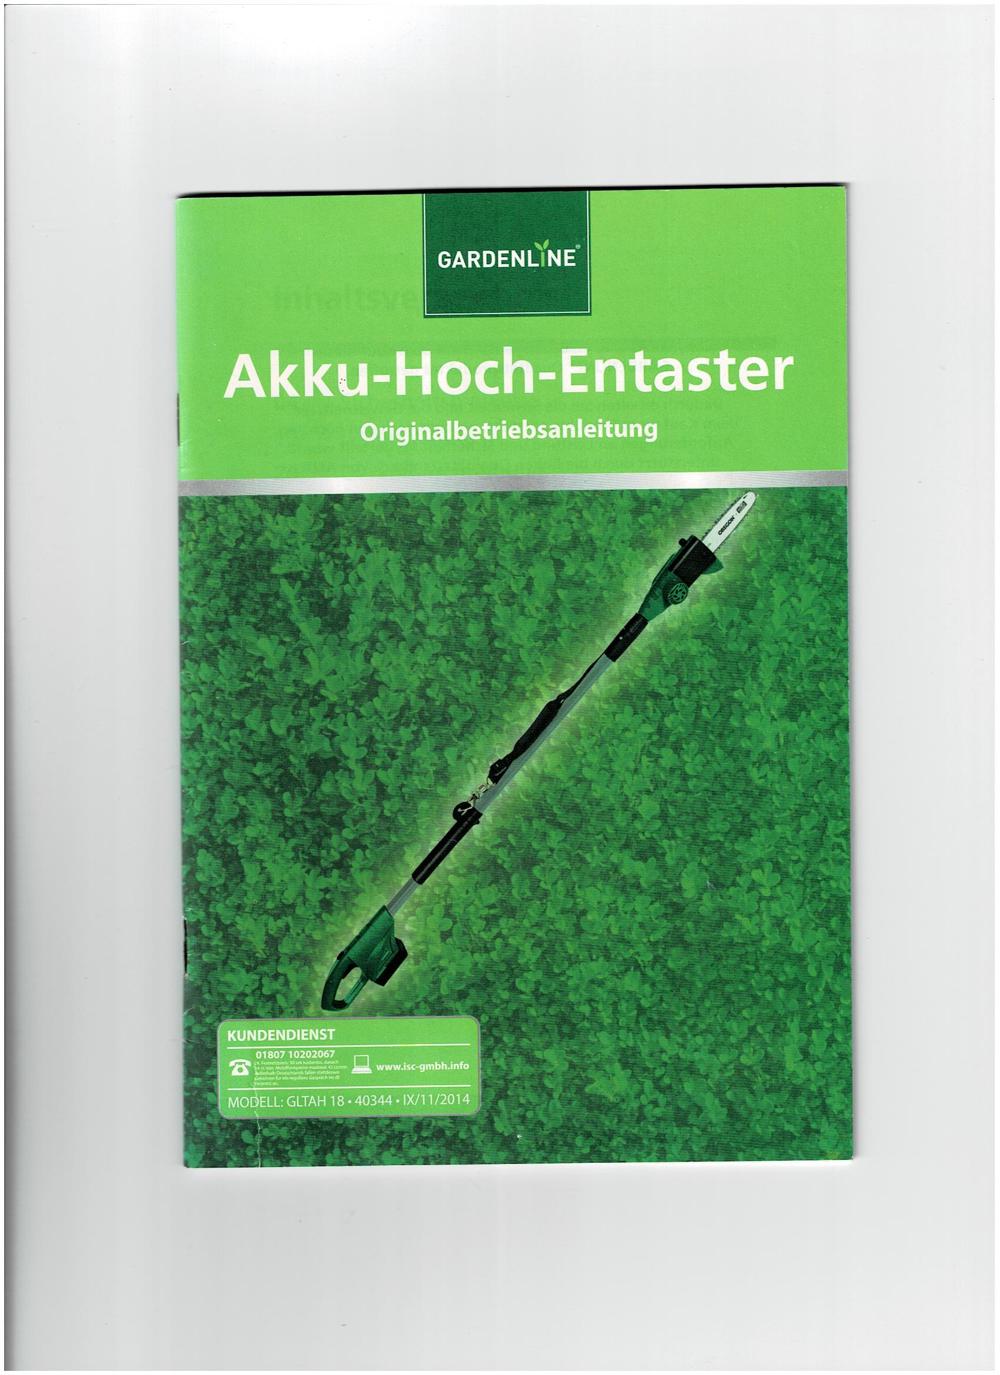 Akku-Hoch-Entaster